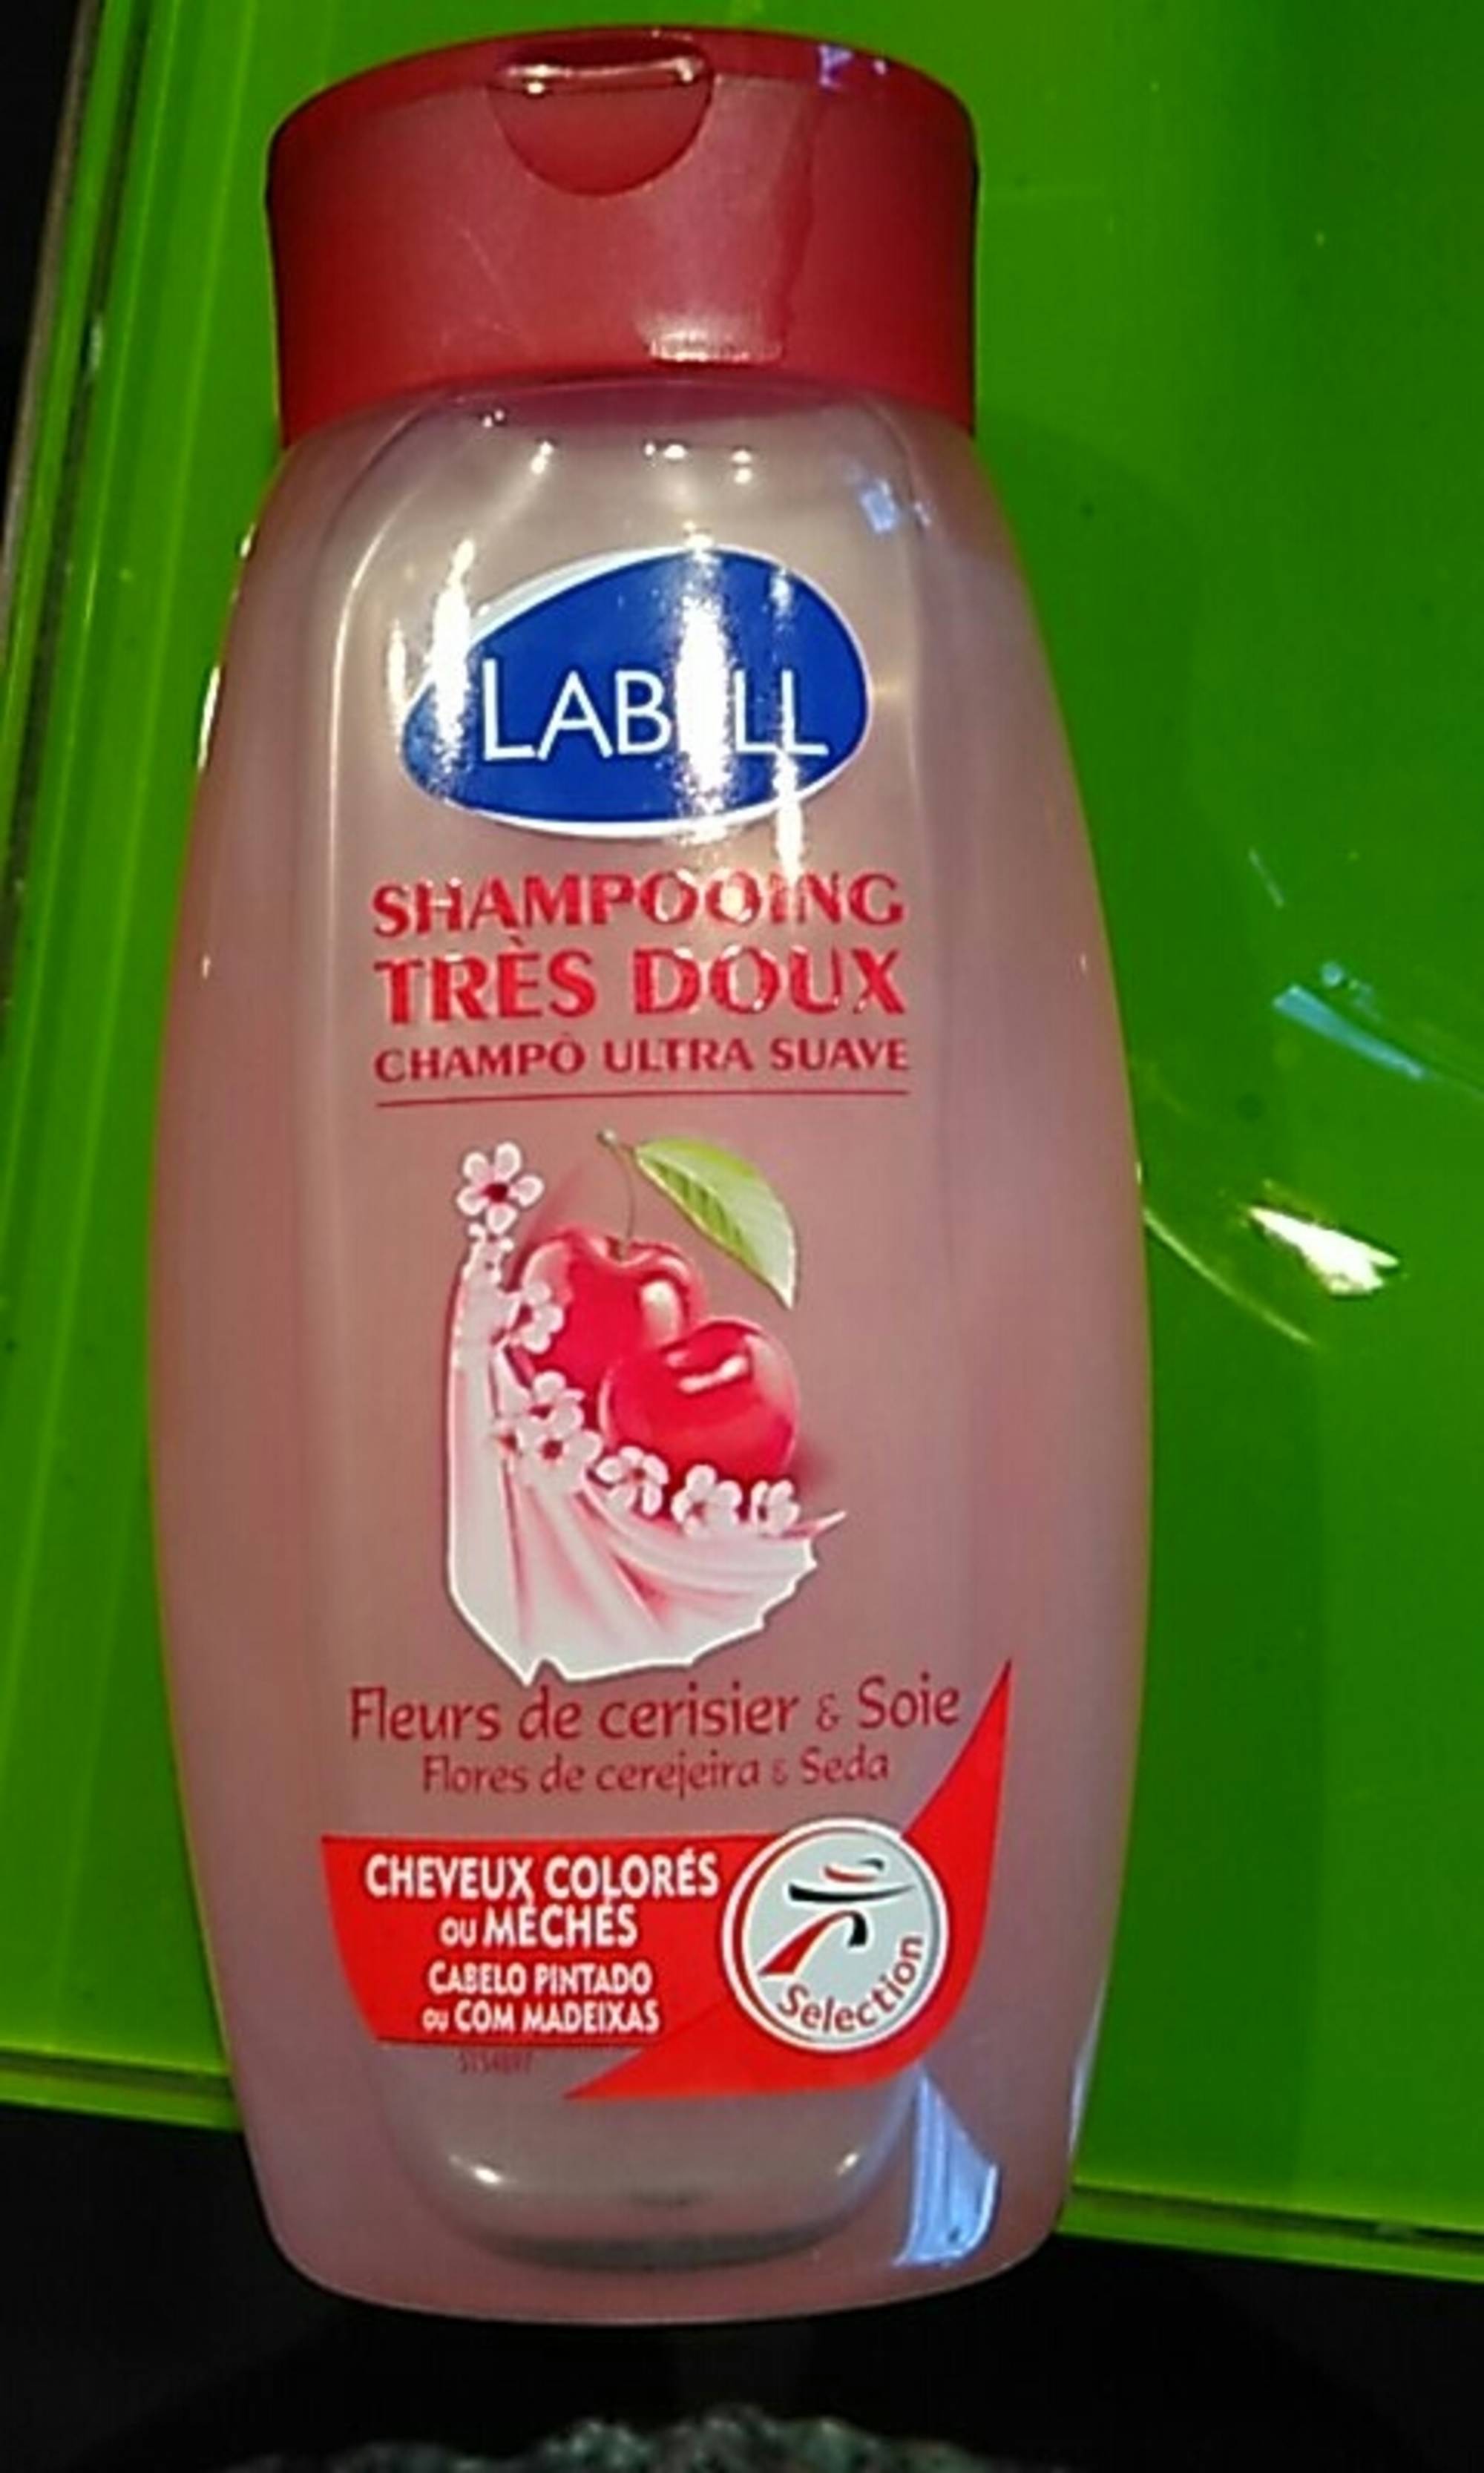 LABELL - Shampooing très doux - Fleurs de cerisier & soie